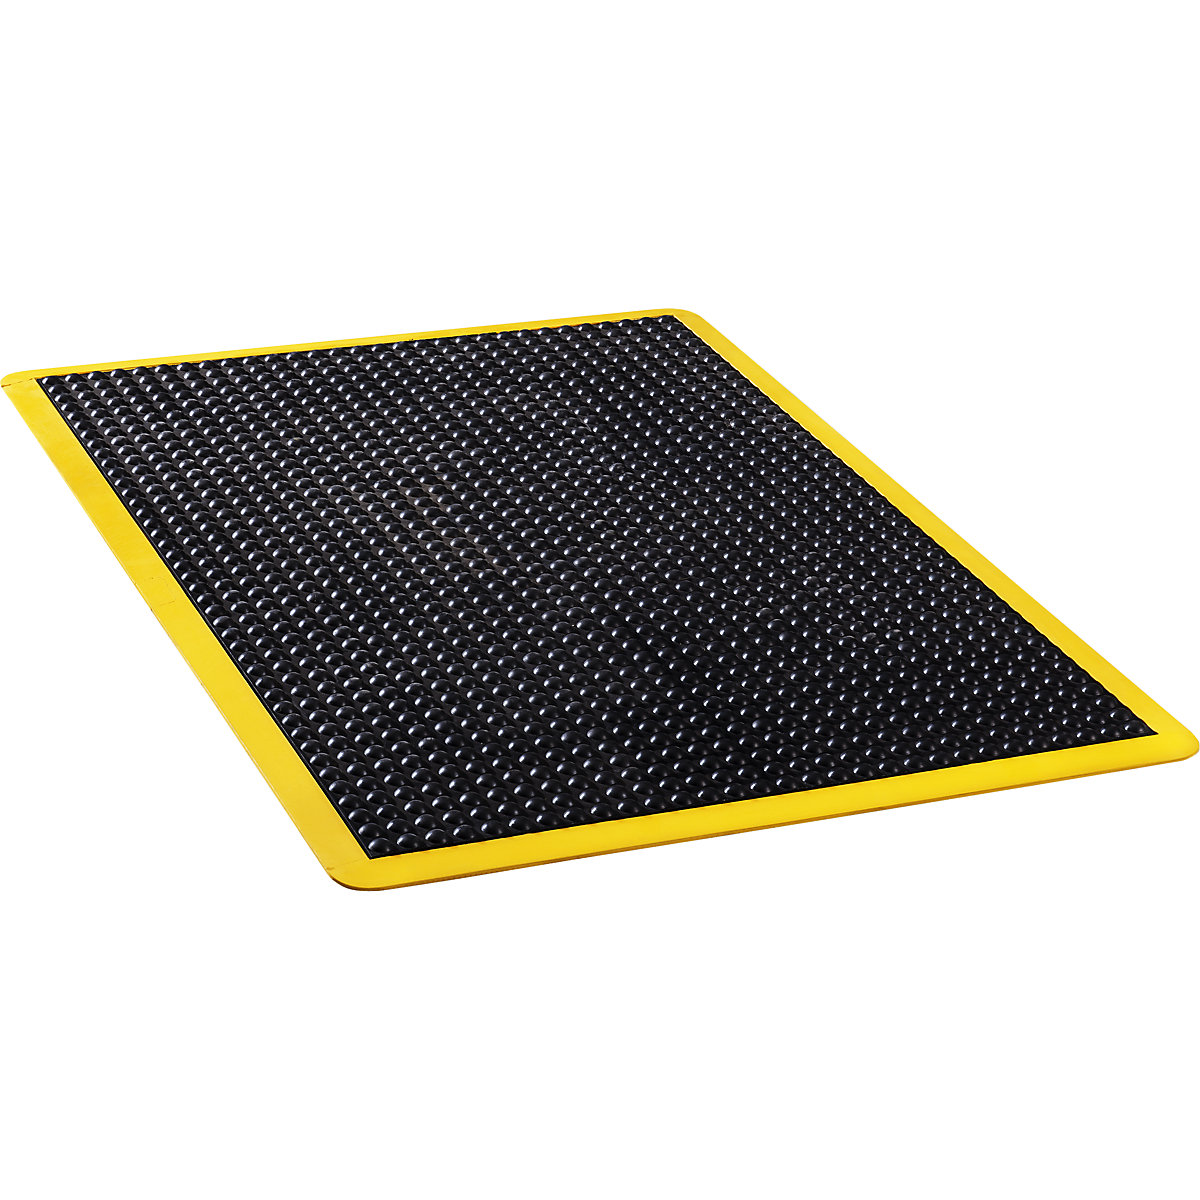 Esteira anticansaço Bubblemat safety, CxLxA 900 x 600 x 14 mm, preto/amarelo, esteira individual